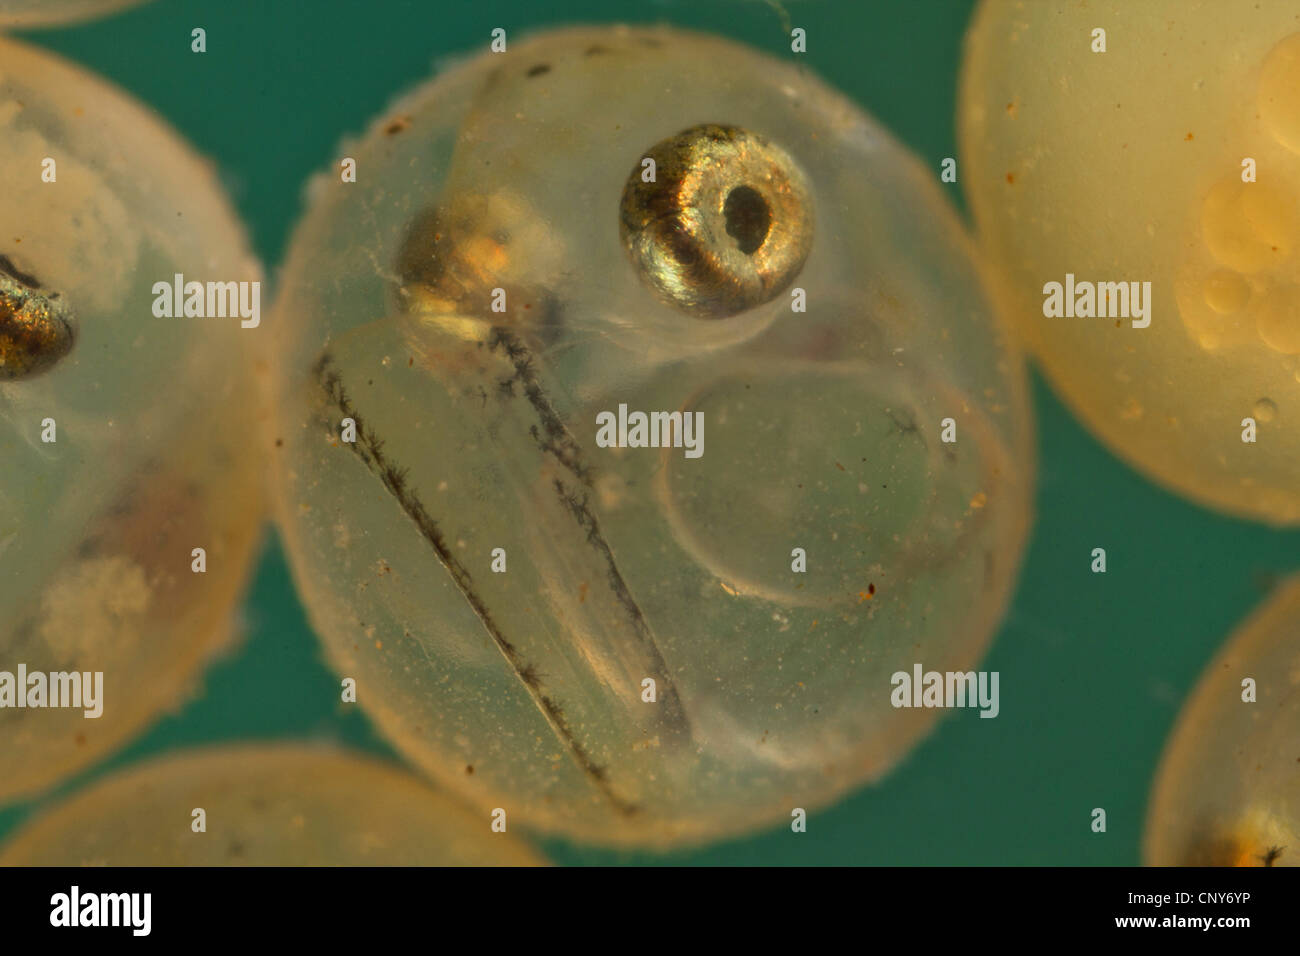 whitefishes, lake whitefishes (Coregonus spec.), eggs with the eyes already developed Stock Photo